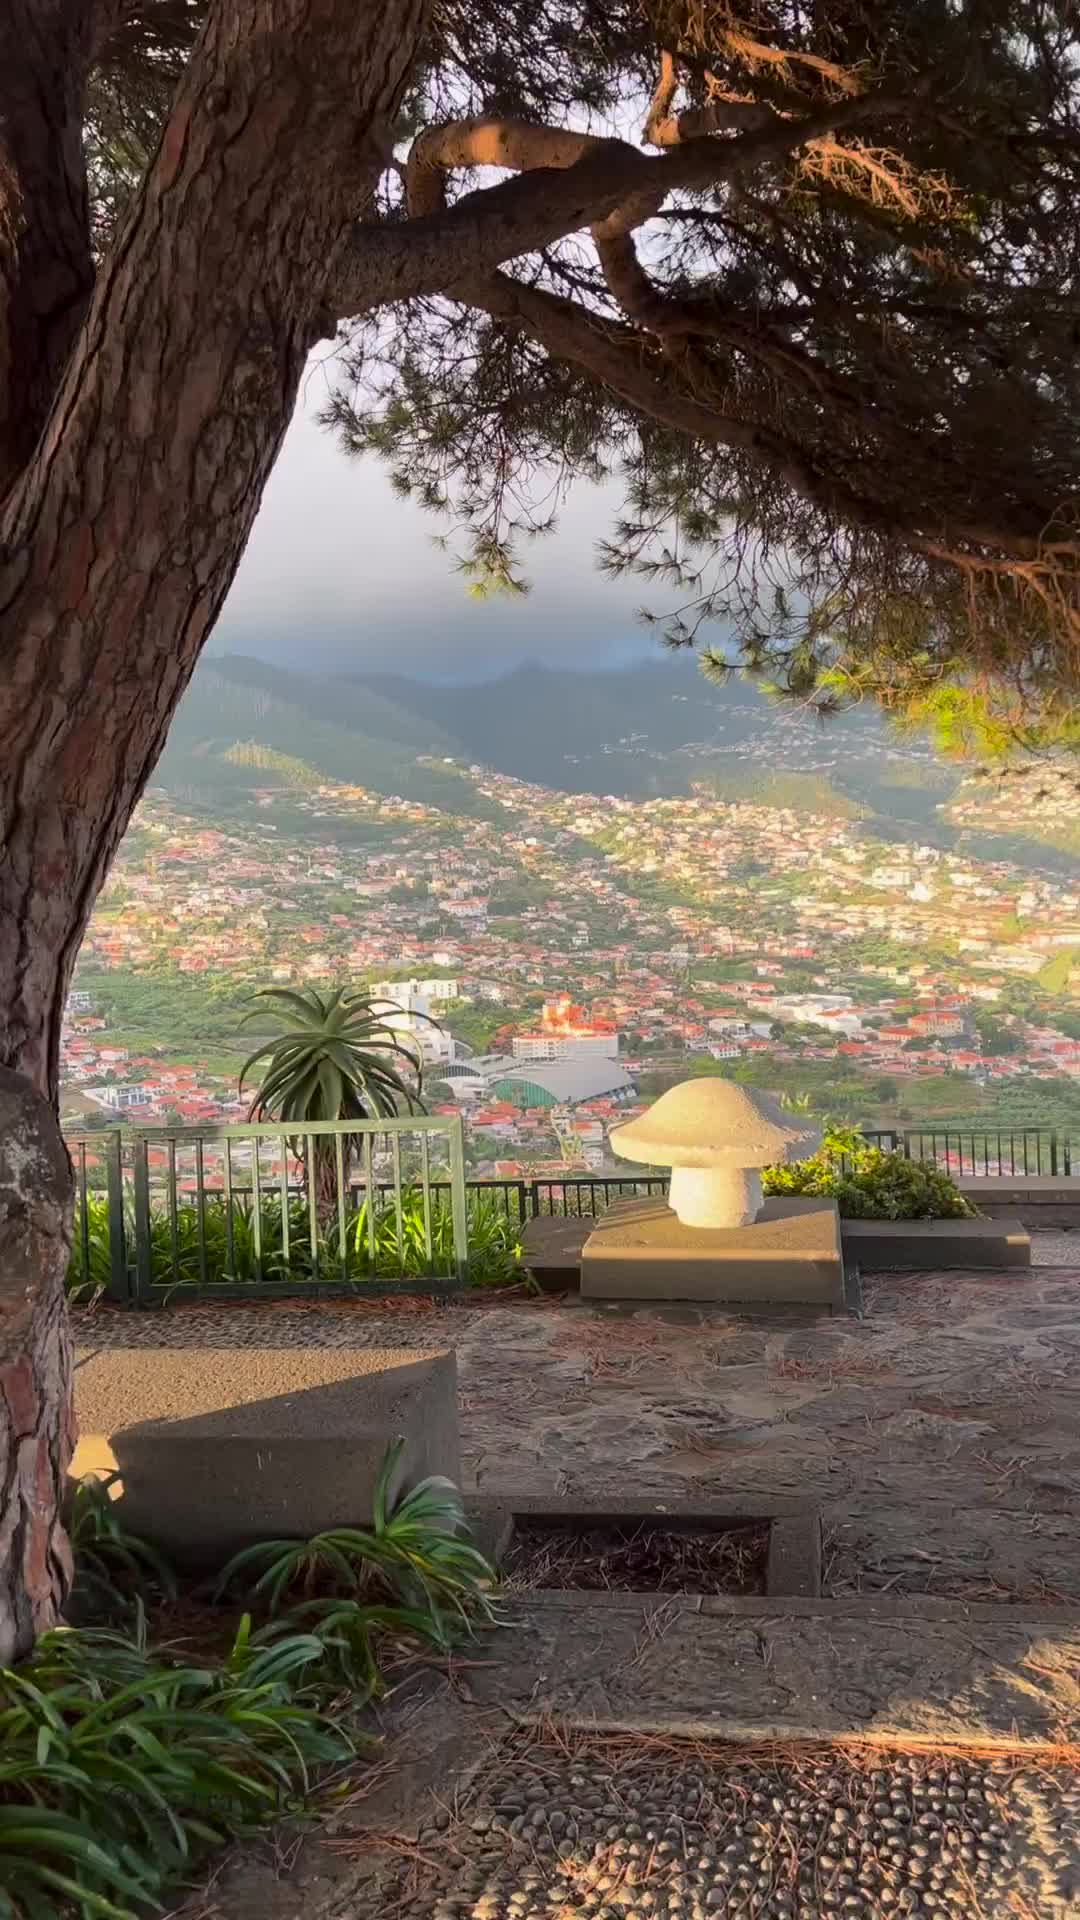 Discover Miradouro Pico dos Barcelos, Madeira